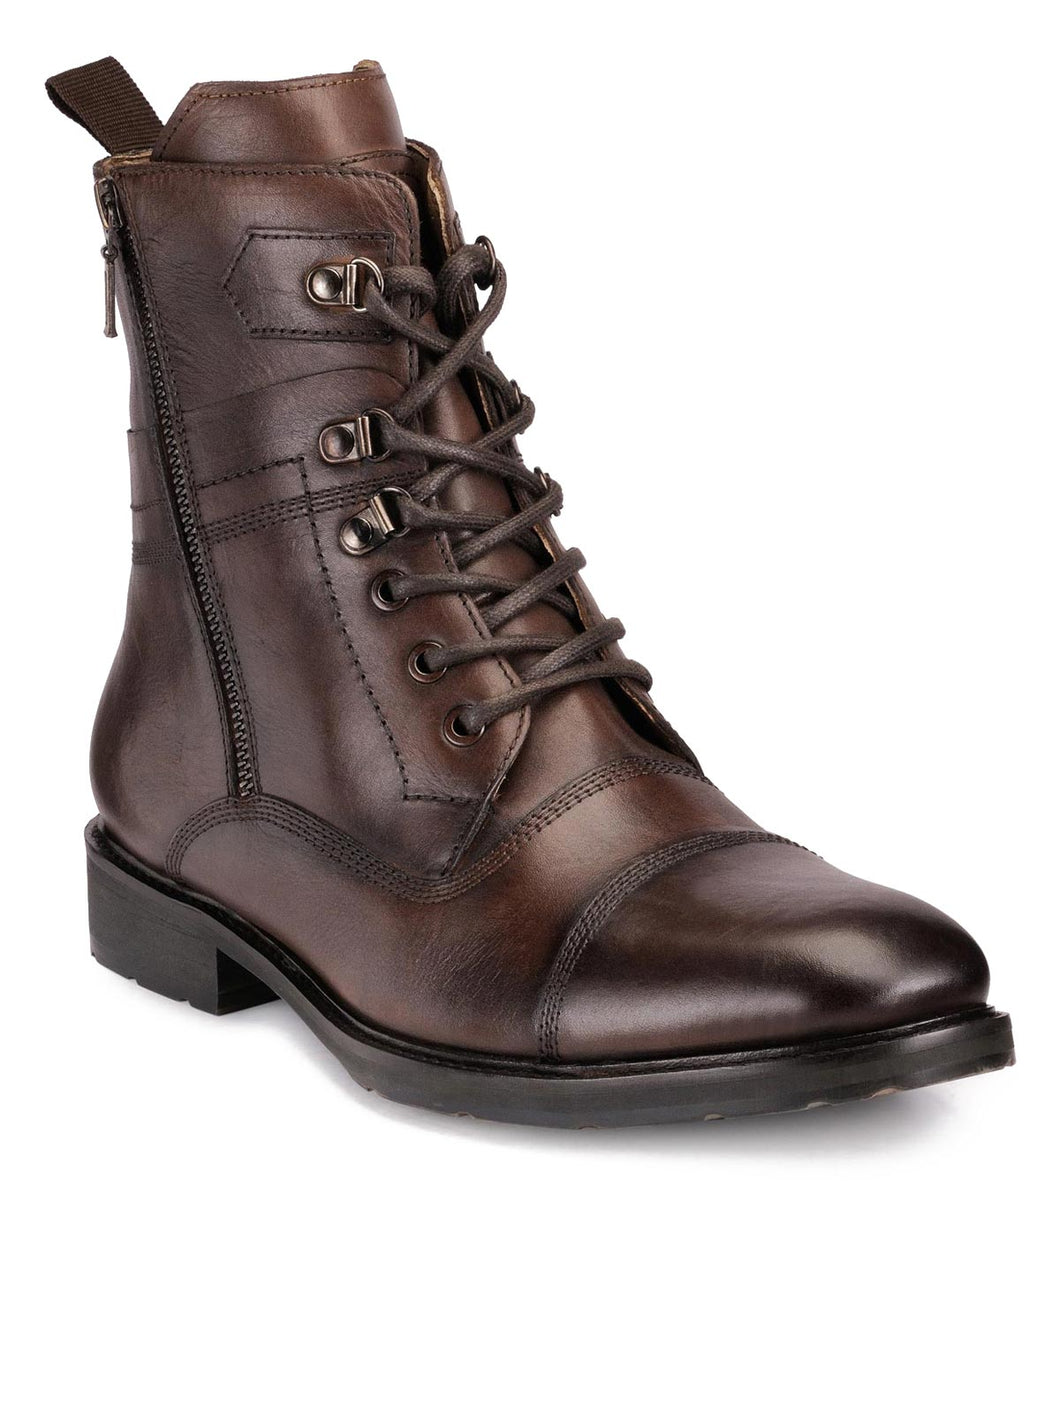 Teakwood Genuine Leather Mens Boots